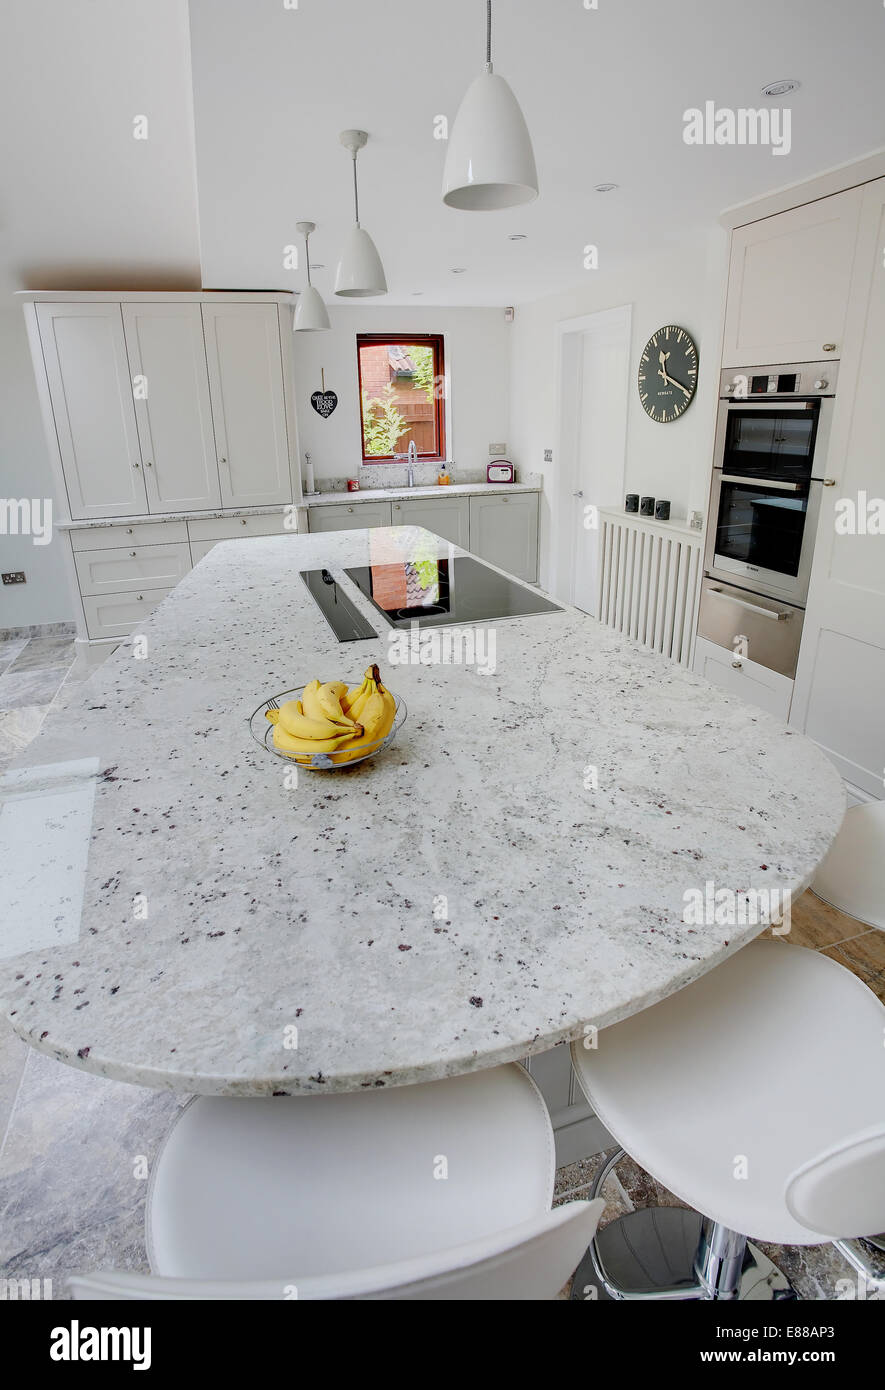 Une cuisine moderne blanc avec plan de travail en granite Photo Stock -  Alamy